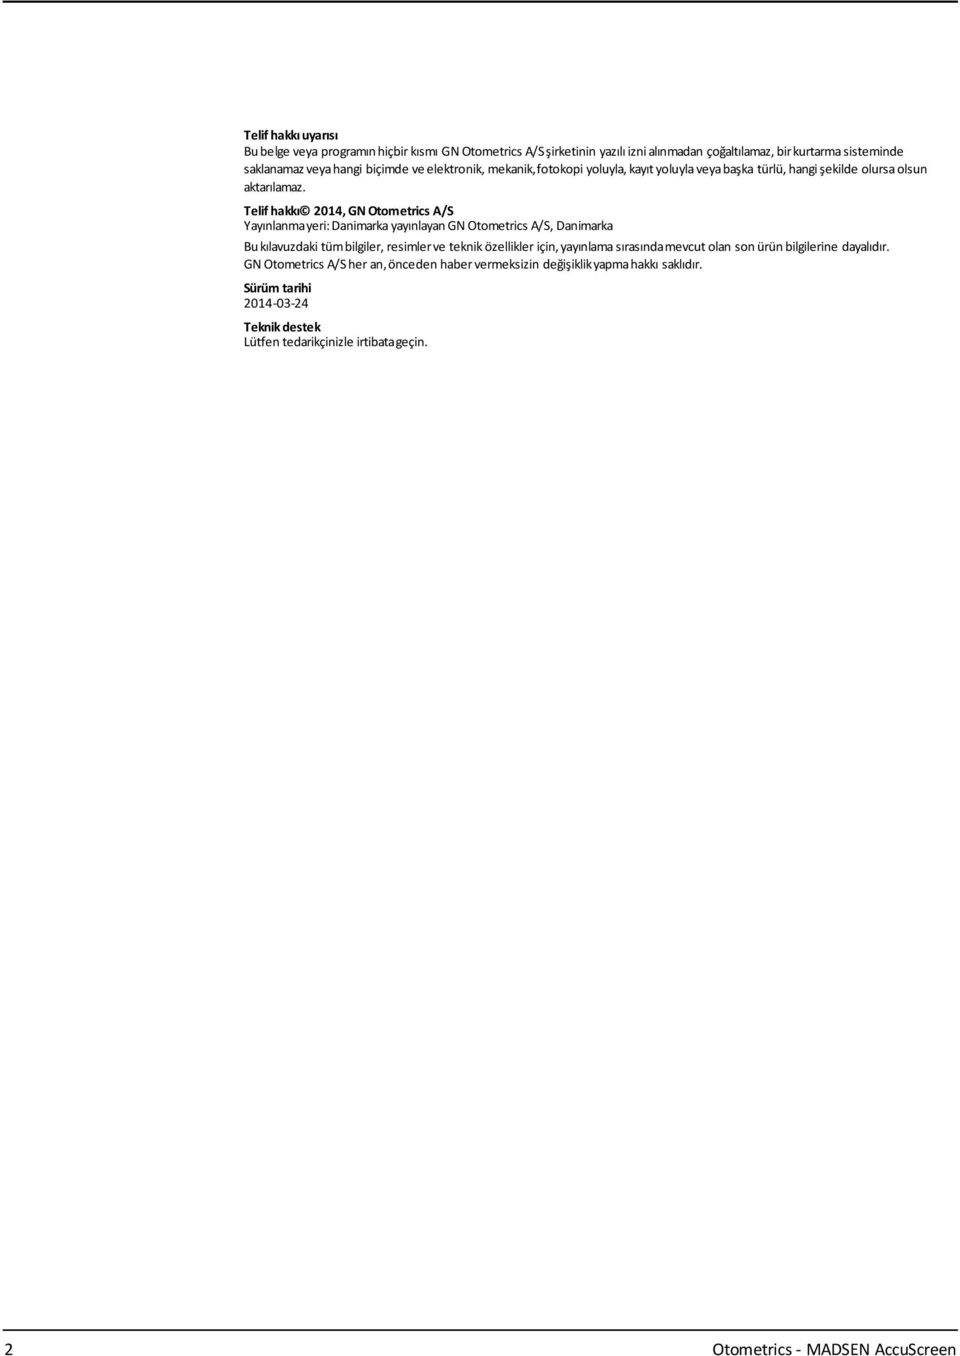 Telif hakkı 2014, GN Otometrics A/S Yayınlanmayeri:Danimarka yayınlayangn Otometrics A/S, Danimarka Bukılavuzdaki tümbilgiler, resimlerve teknik özellikler için, yayınlama